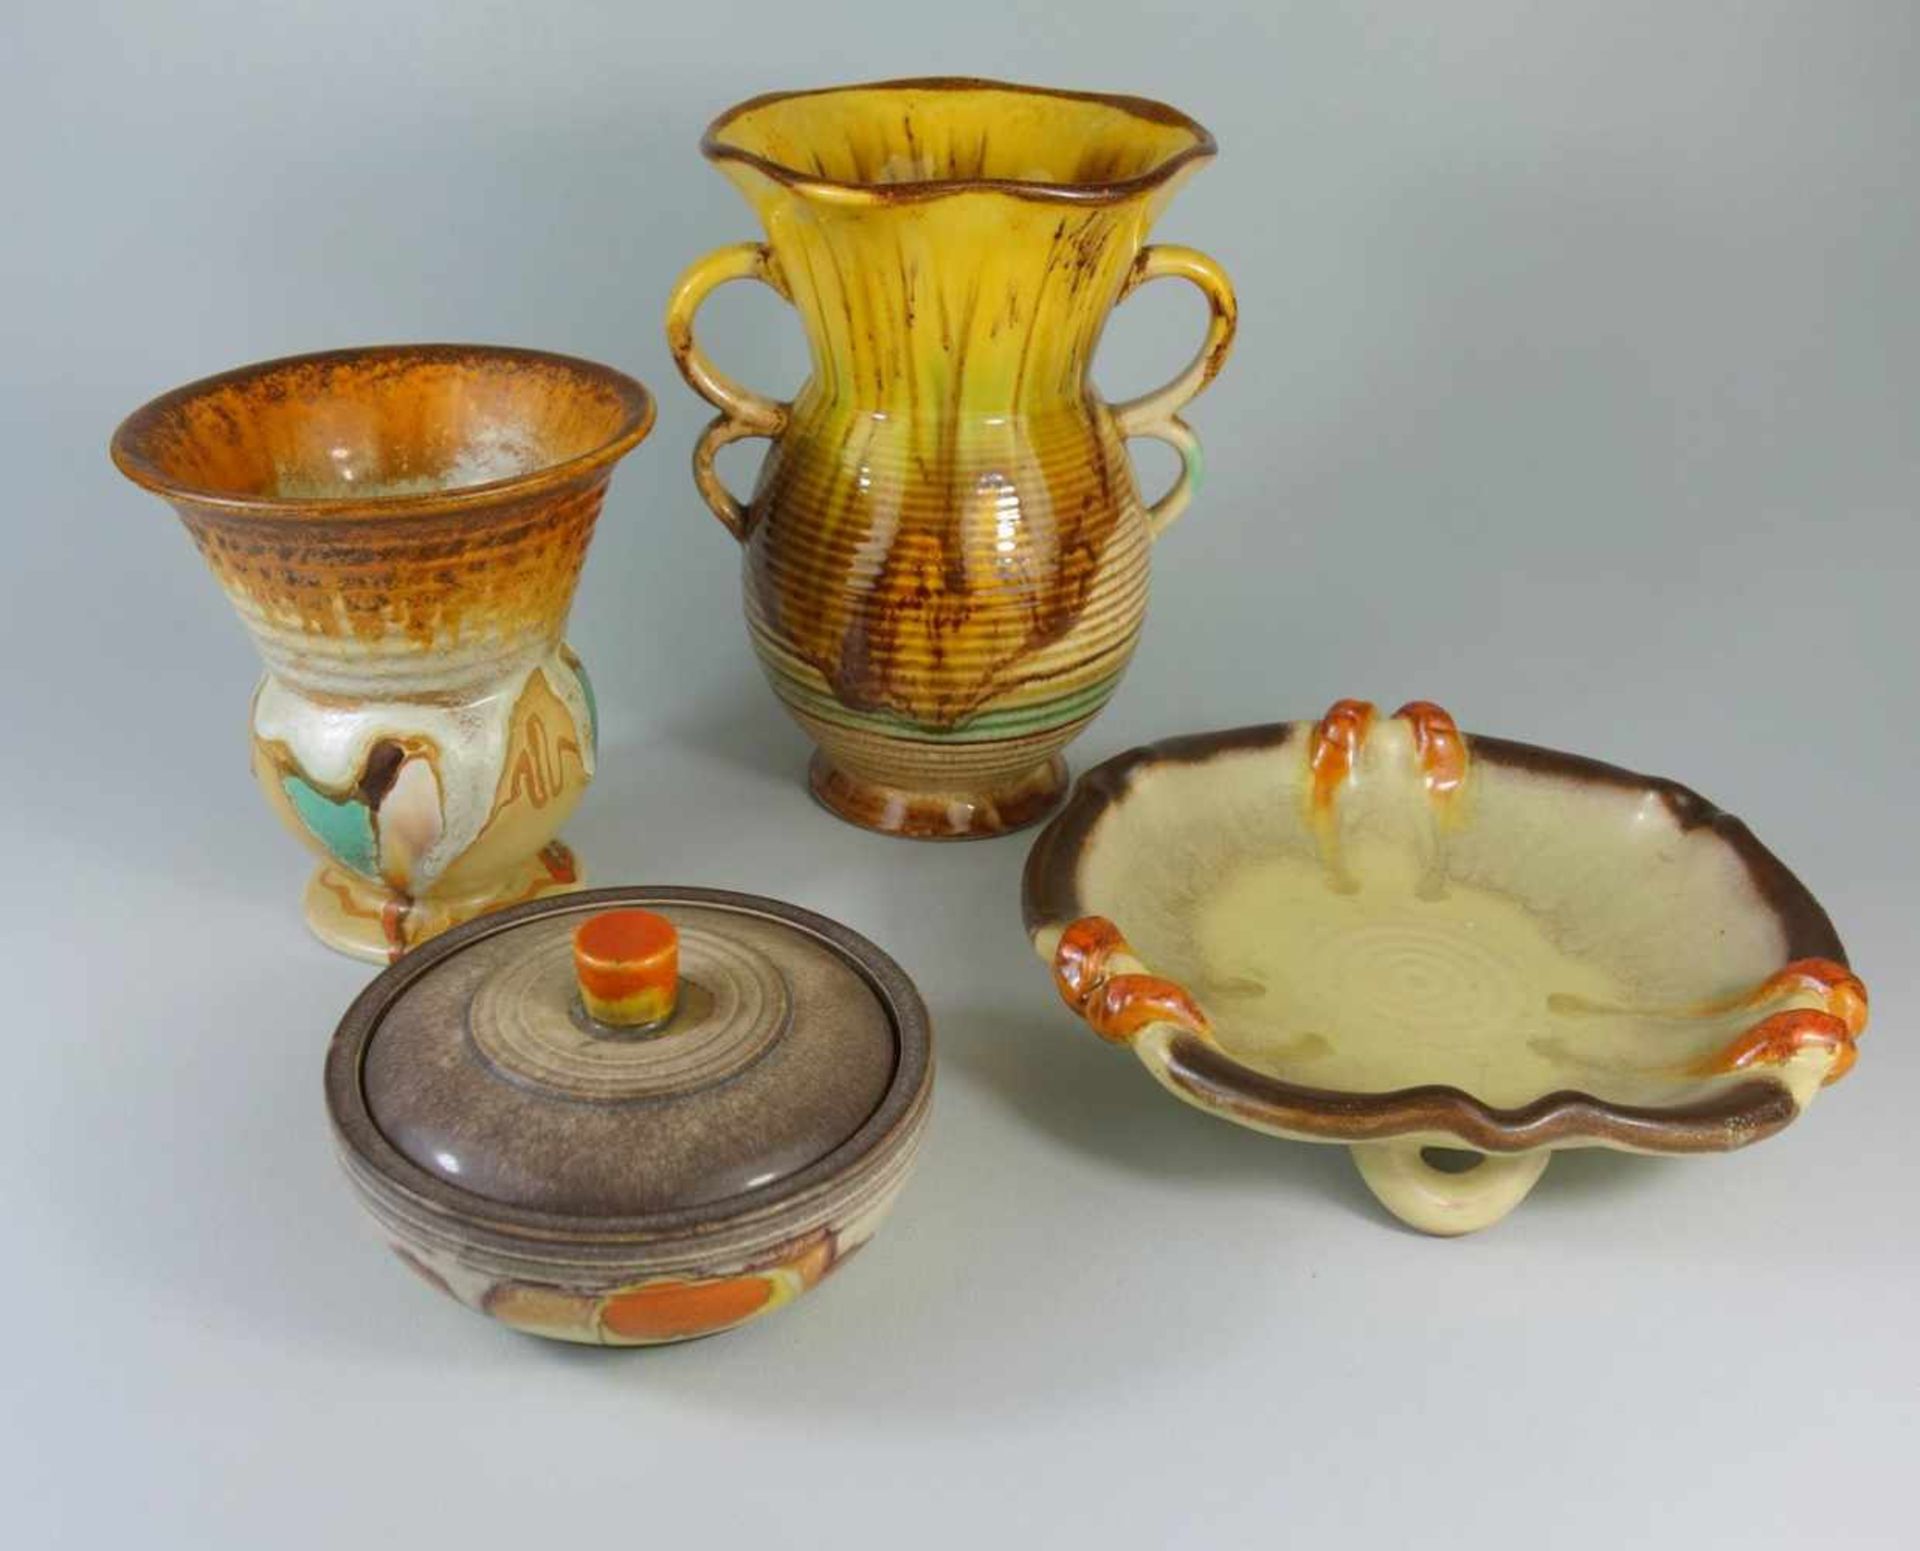 4 Teile Keramik, 50er Jahreüberw. mit Verlaufsglasur; 2 Vasen, H.14cm und 19cm; runde Schale, D.